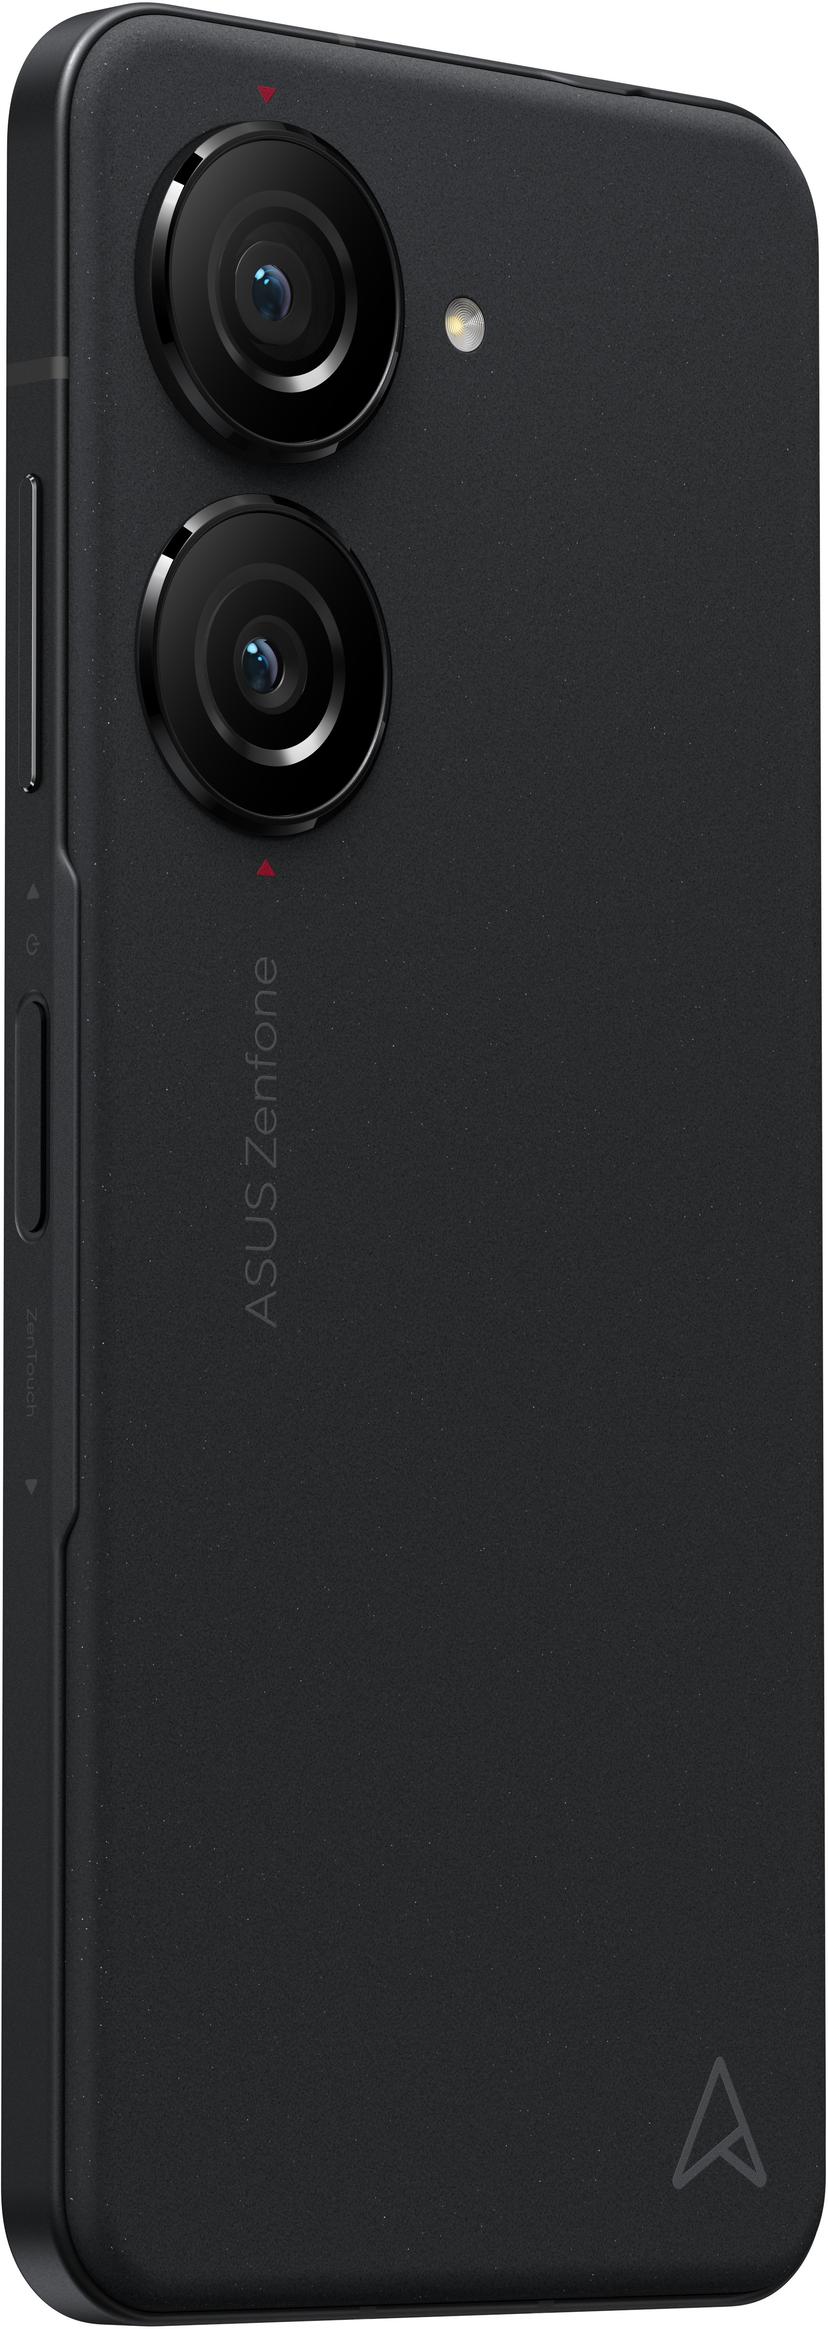 ASUS Zenfone 10 256GB Musta